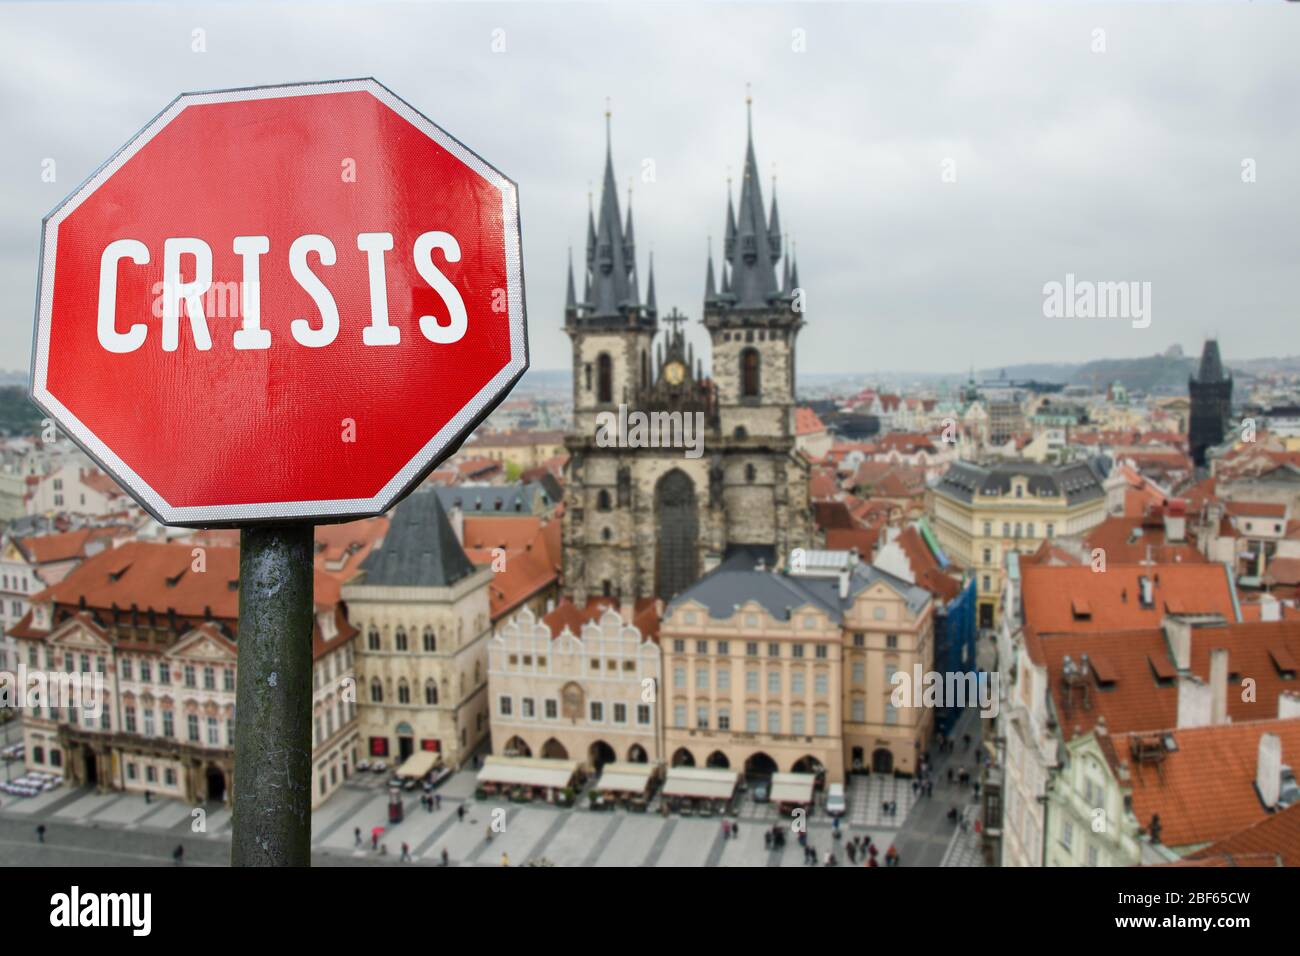 Krisenstopp-Schild mit Blick auf .Prague, Tschechische republik. Finanzcrash in der Weltwirtschaft wegen der Coronavirus-Pandemie. Globale Wirtschaftskrise, reces Stockfoto